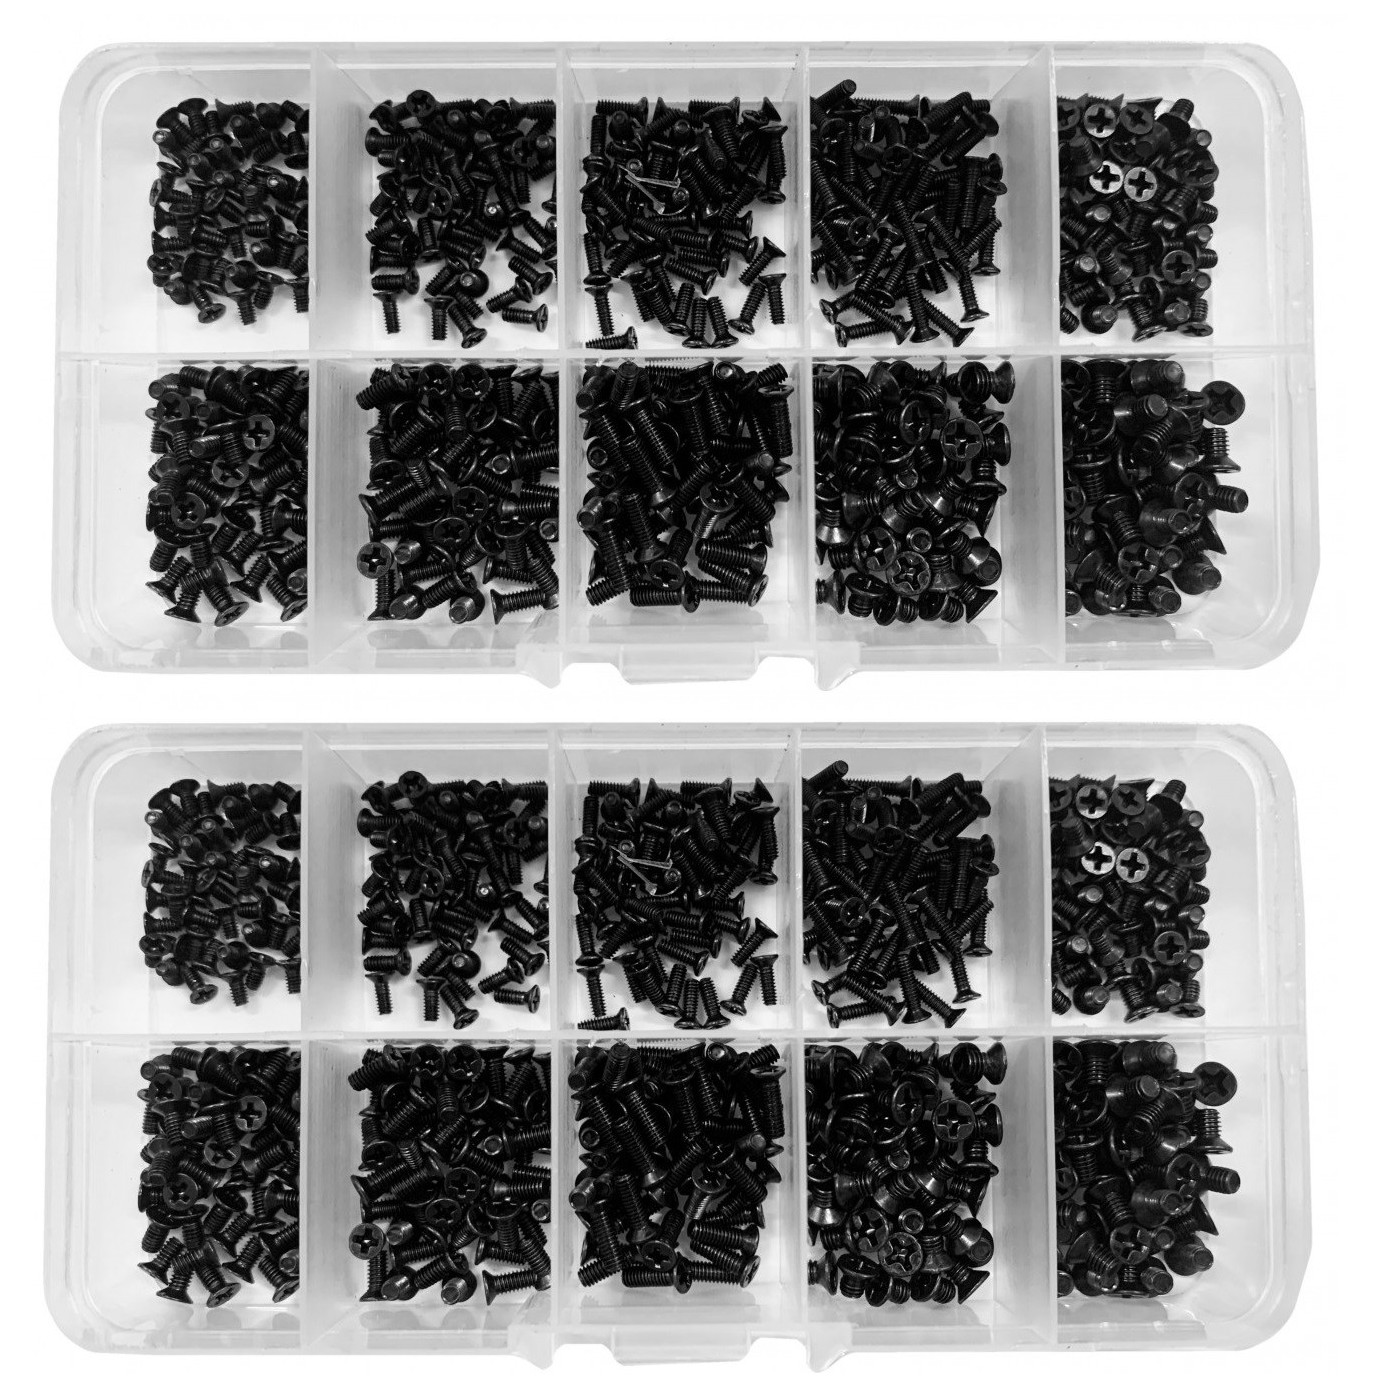 Conjunto de 1000 pequenos parafusos pretos (M2, M2.5 e M3